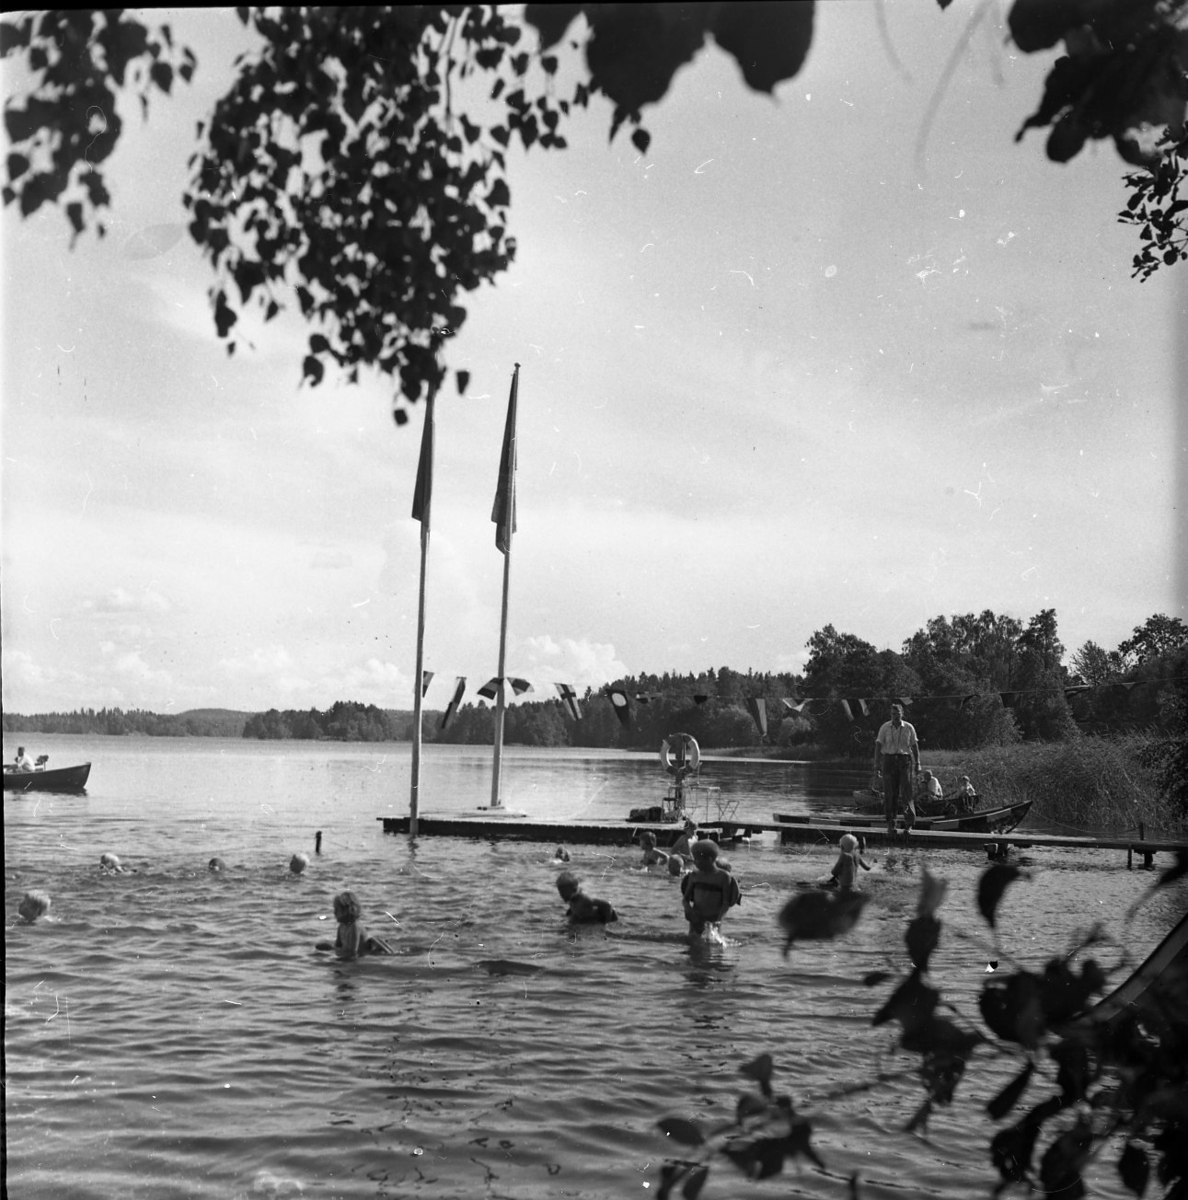 Några barn simmar i en sjö. Det står vuxna på en brygga och tittar på. Två flaggstänger står längst ut på bryggan. En roddbåt skymtar i utkanten av bilden.